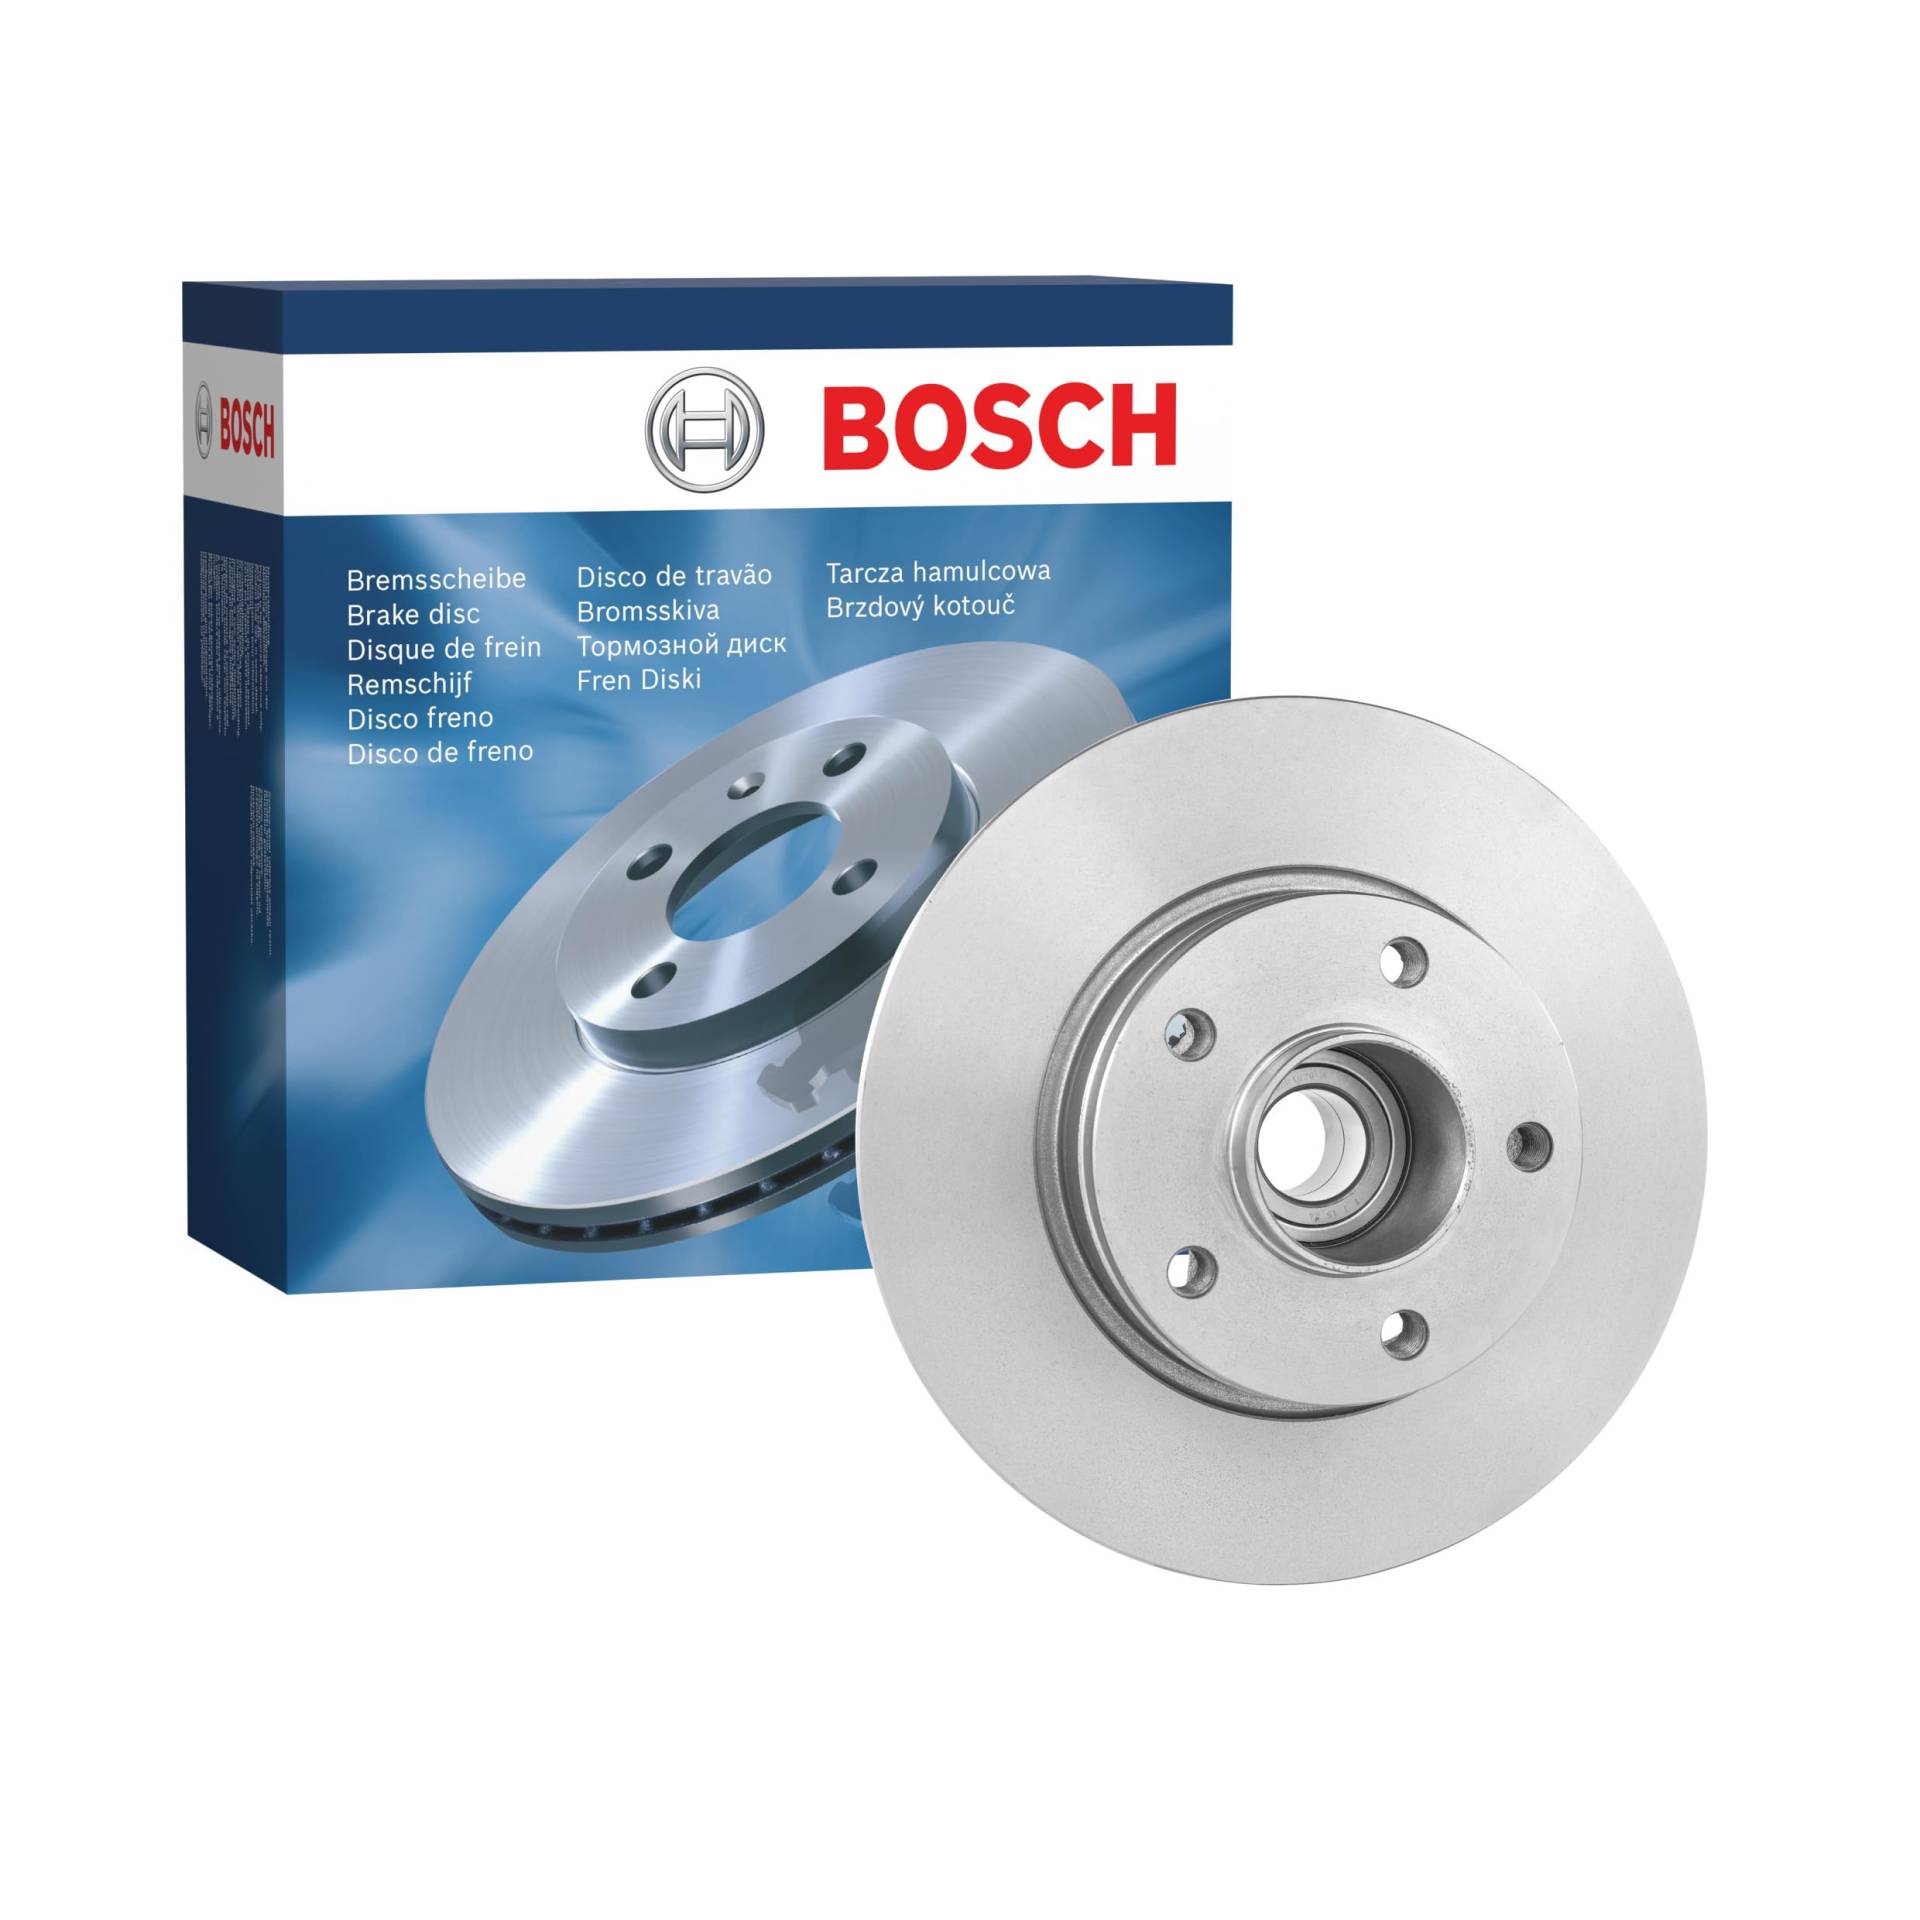 Bosch BD1120 Bremsscheiben mit Radlager - Hinterachse - ECE-R90 Zertifizierung - eine Bremsscheibe von Bosch Automotive